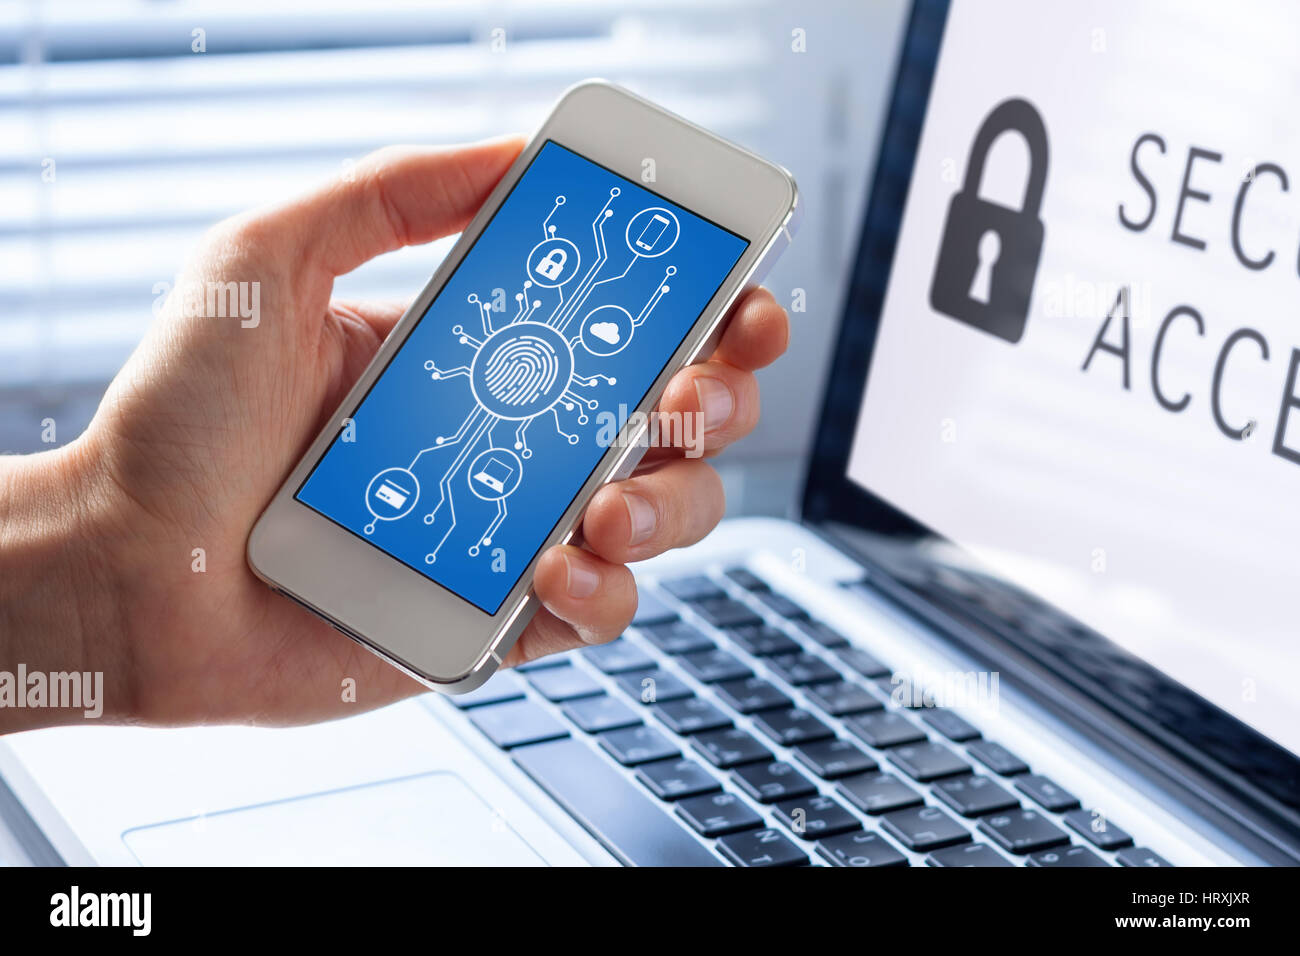 Handy-Cyber Security-Konzept mit einer Person, die Smartphone-Bildschirm, Cyber-Diagramm und Symbole mit Mikrochip Form und Fingerabdruck biom Stockfoto